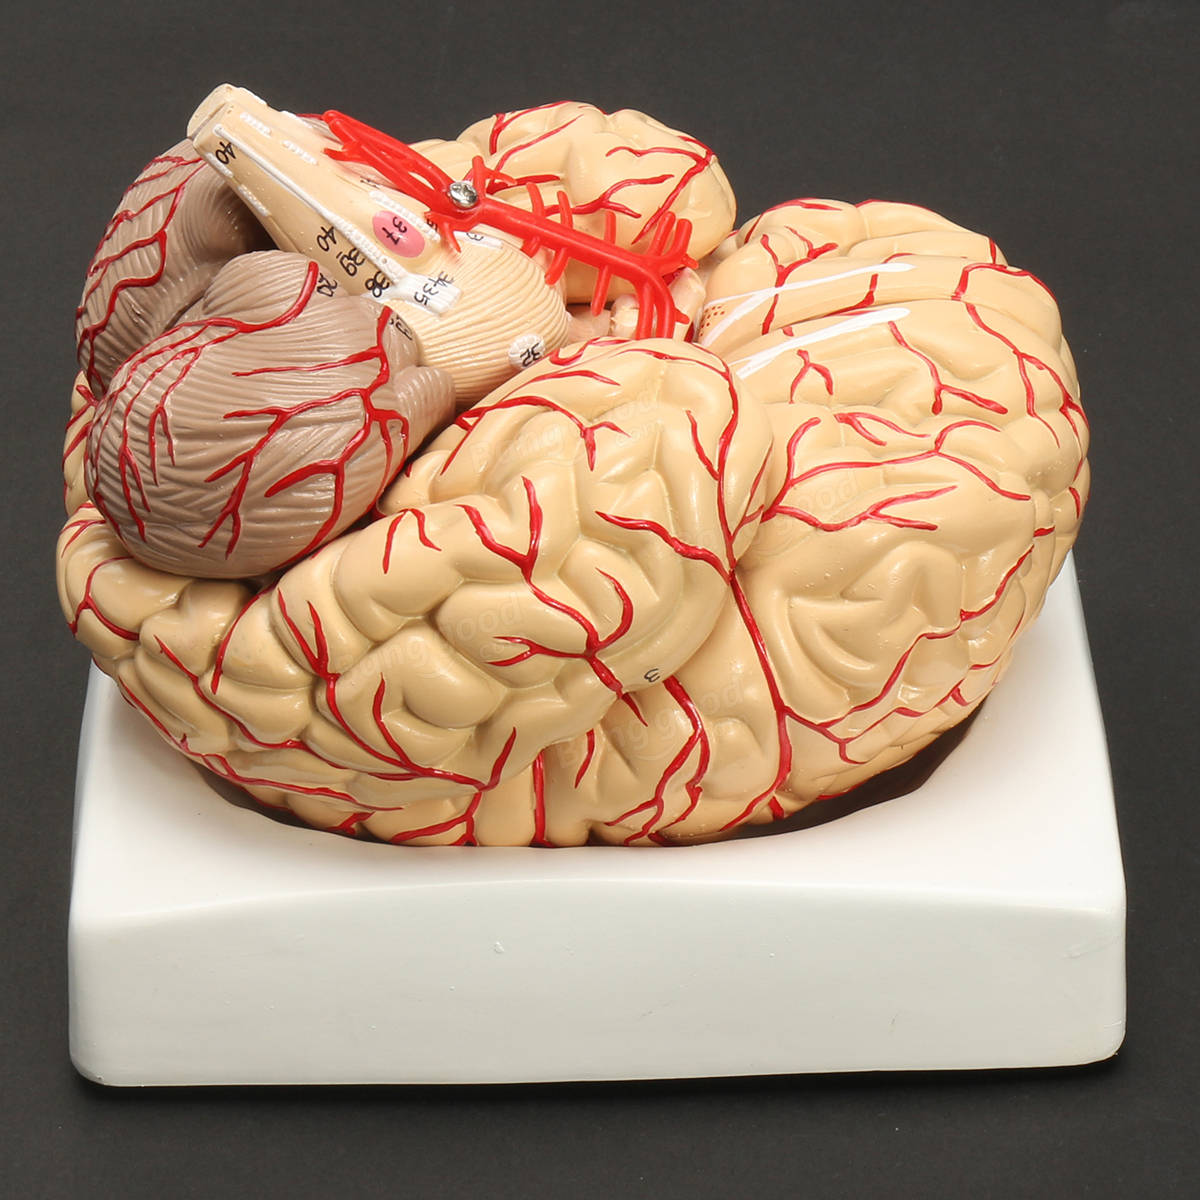 Мозг купить спб. Муляж мозга. Макет мозга. Анатомическая модель головного мозга. Модель человеческого мозга.